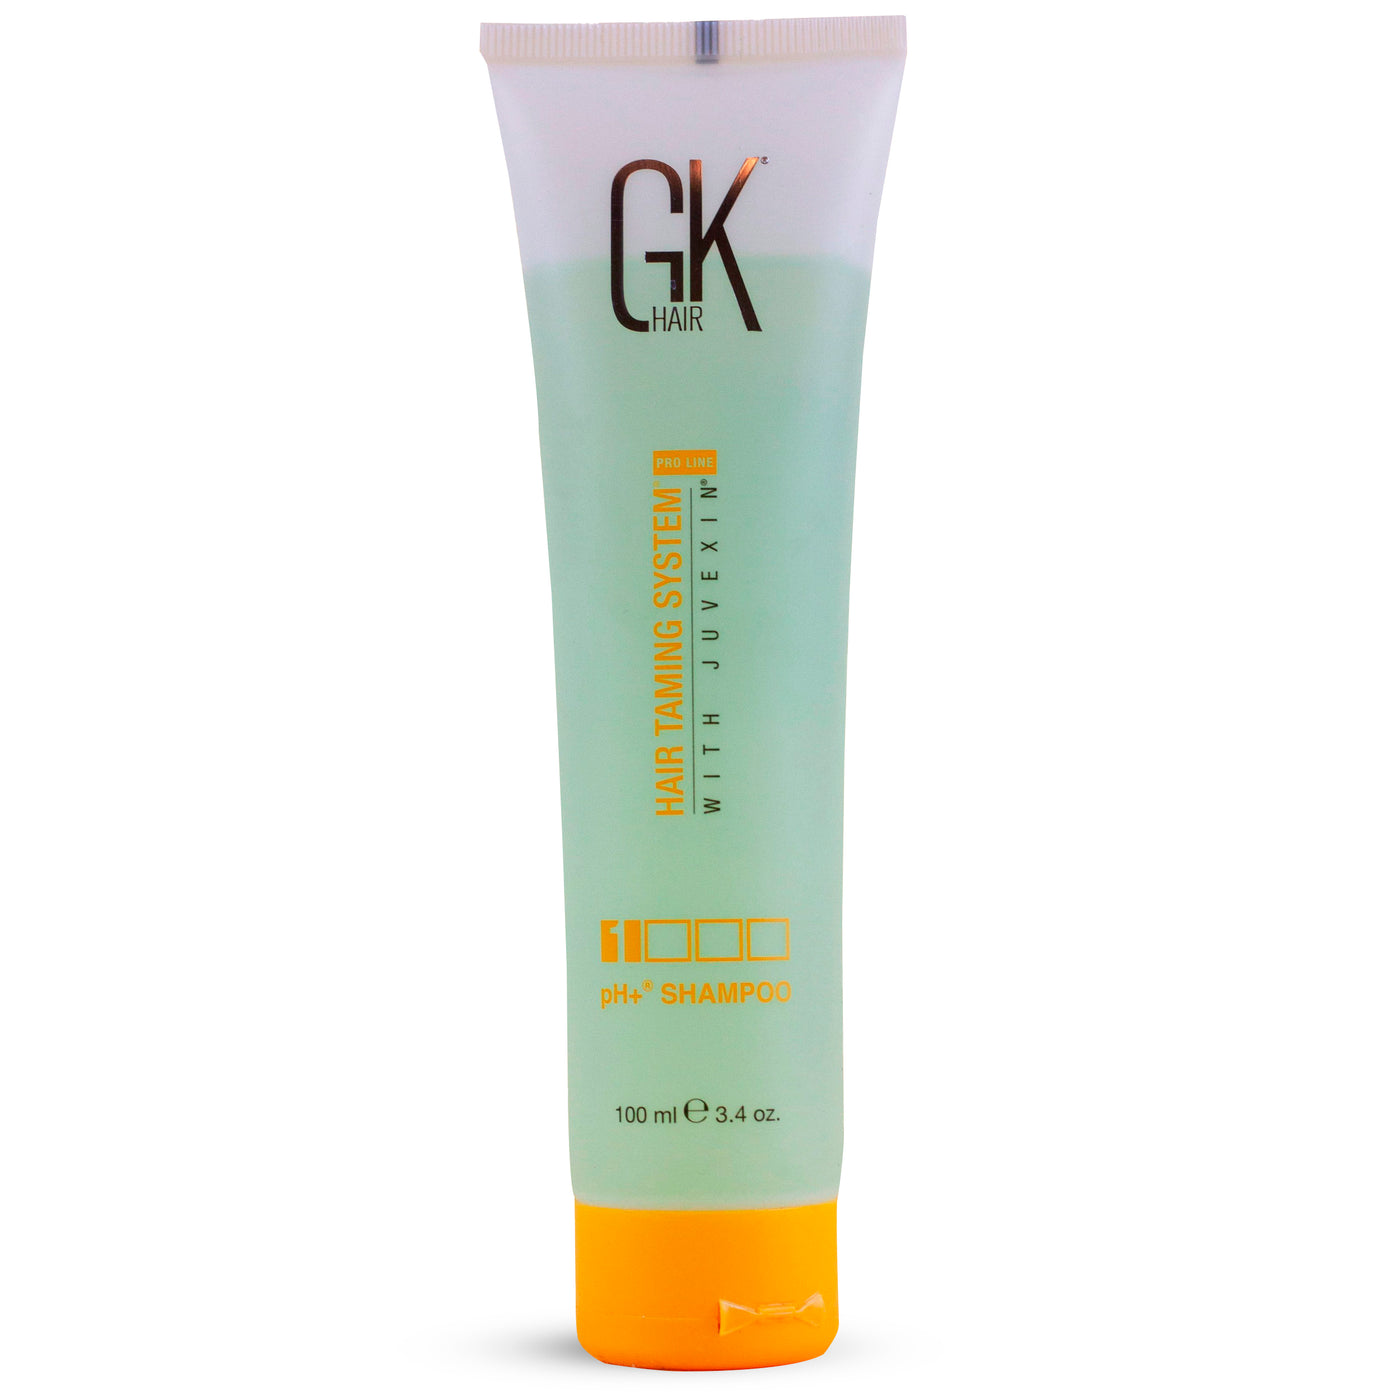 Buy pH+ Shampoo - Clarifying Shampoo at GK Hair Europe